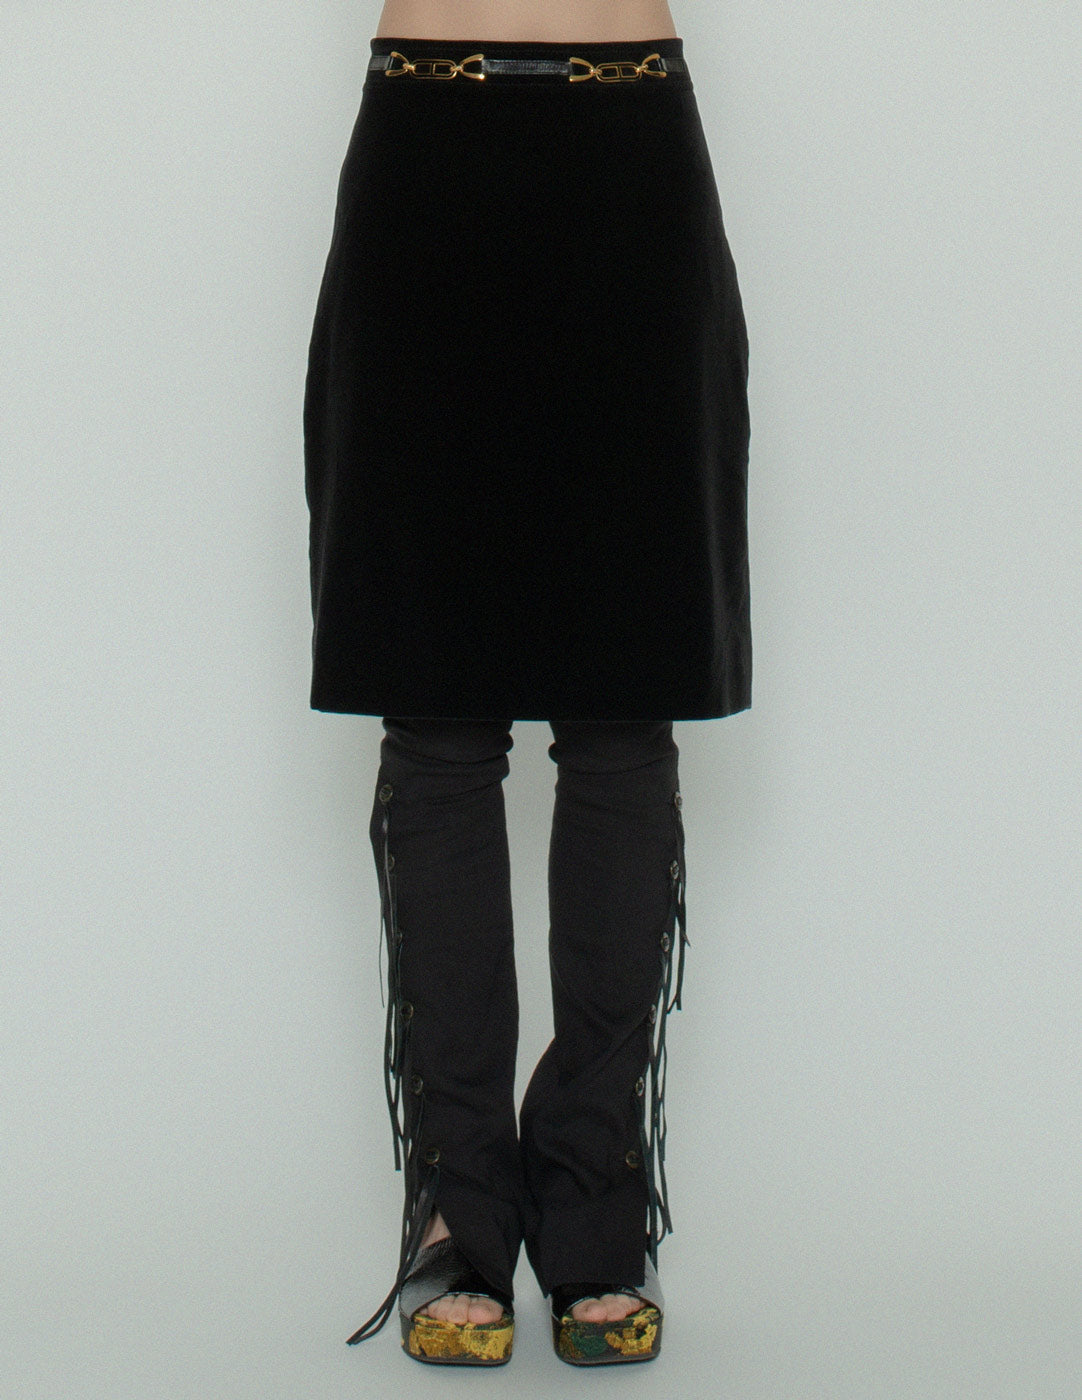 Celine vintage black velvet skirt detail